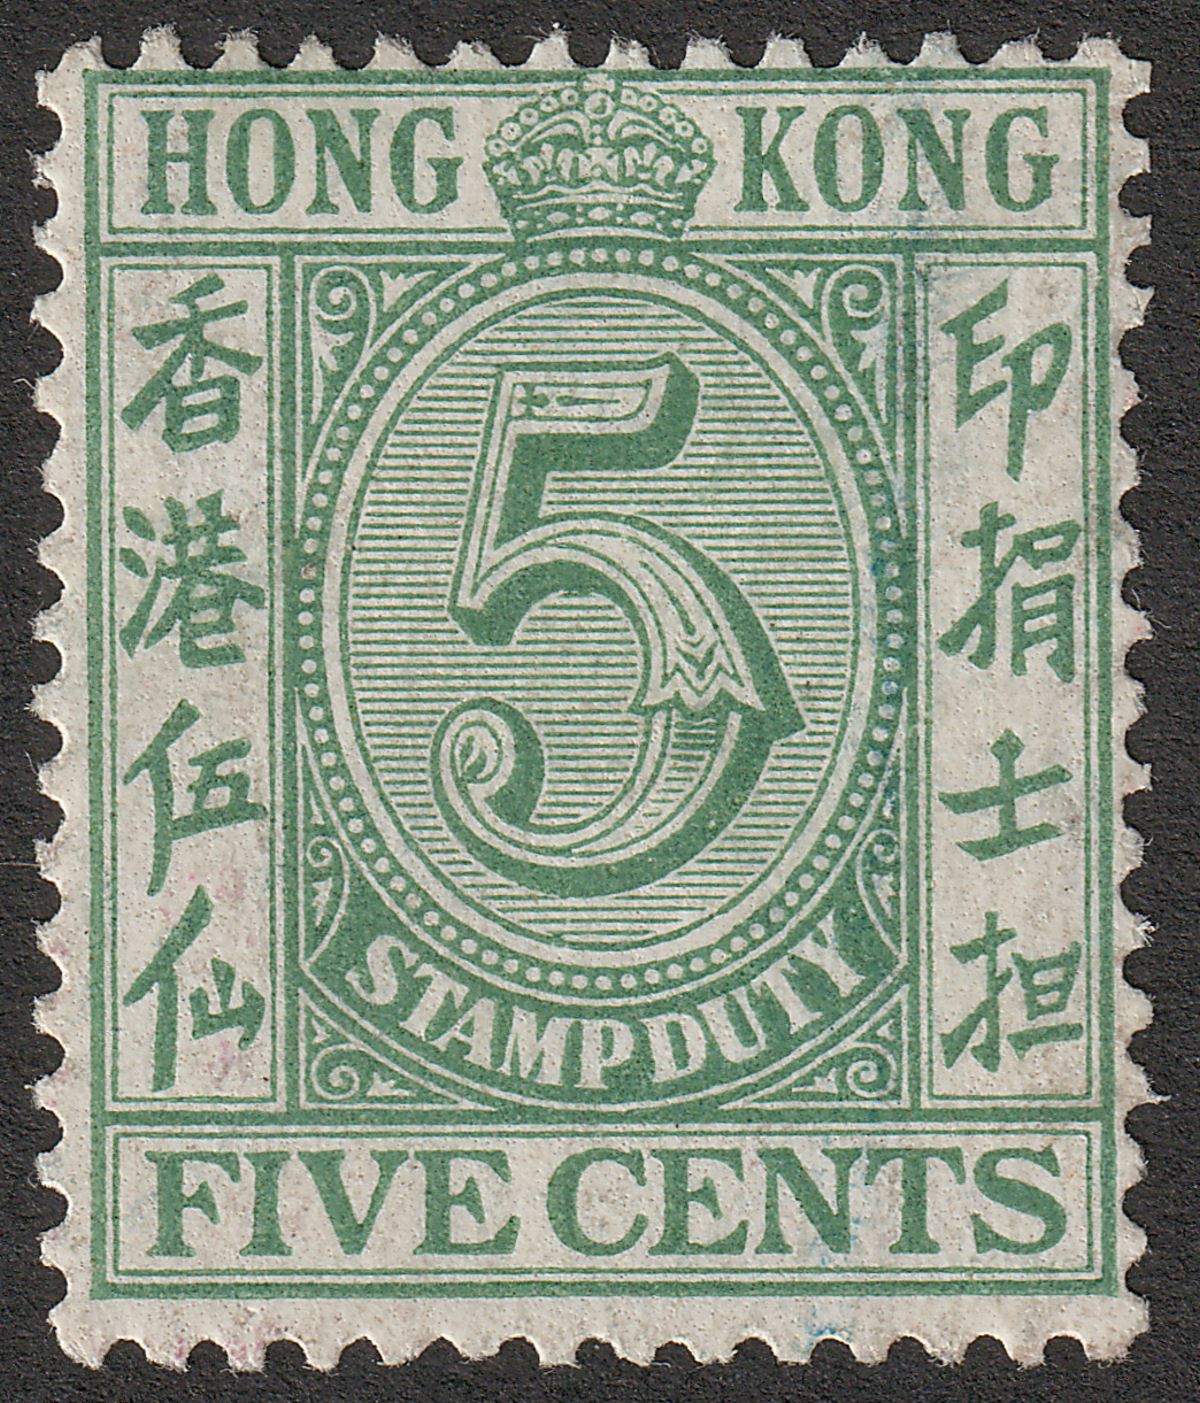 Hong Kong 1938 KGVI Stamp Duty 5c Green Mint SG F12 cat £100 light gum adhesion